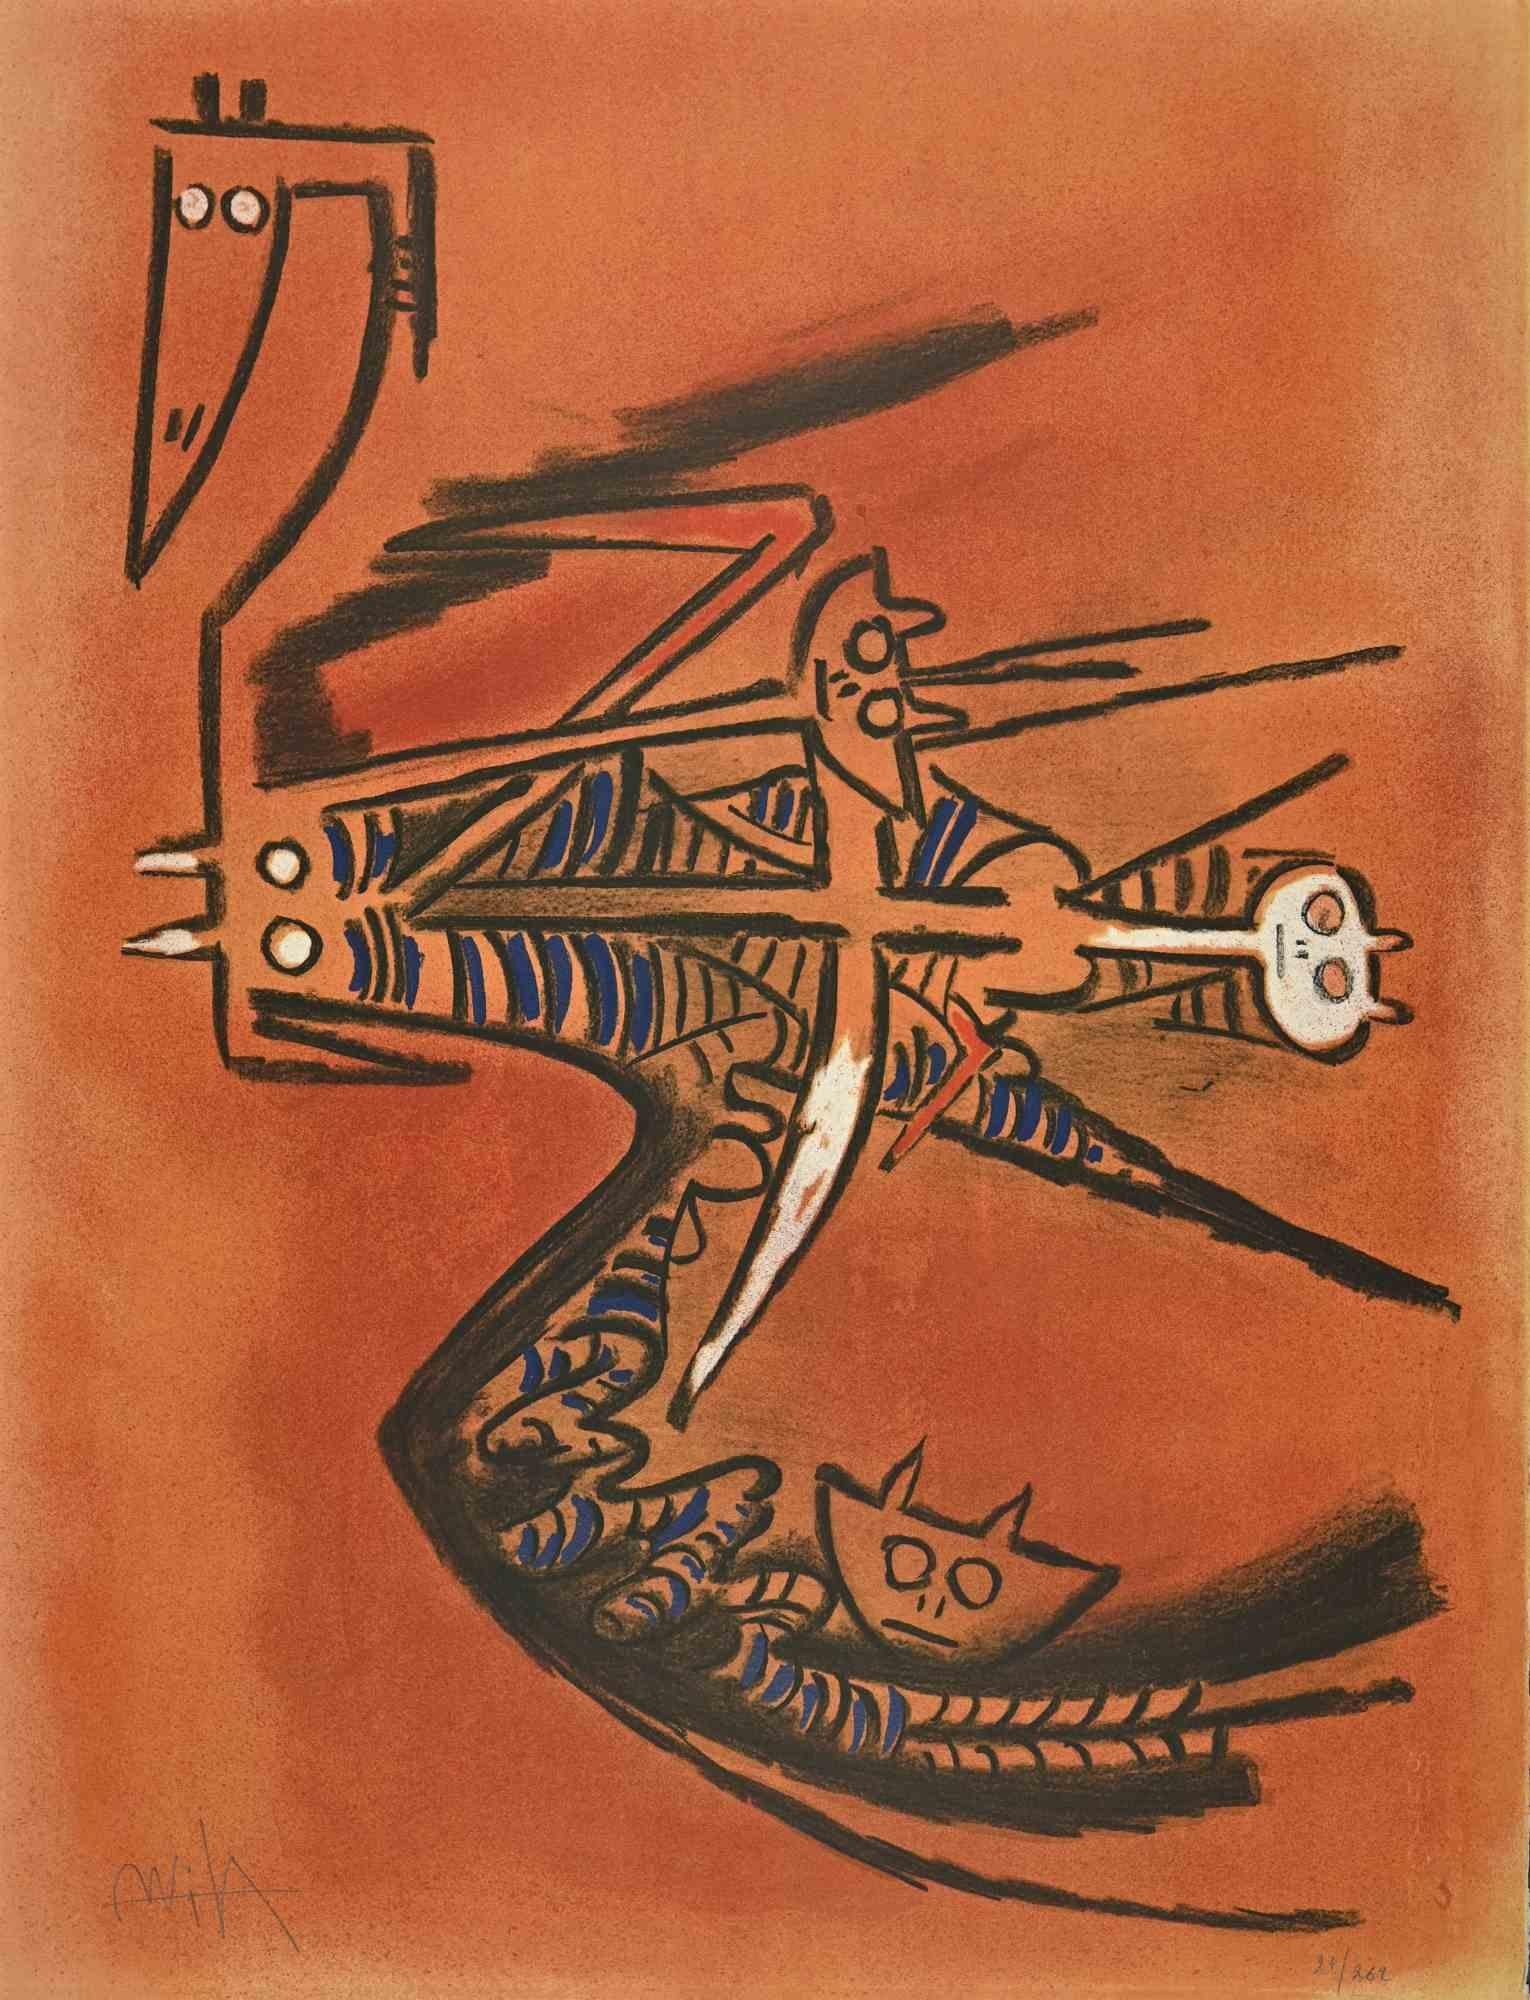 Soeur de la Gazelle - de la suite "Pleni Luna" est une oeuvre d'art contemporain réalisée par Wifredo Lam.

Lithographie en couleurs mélangées.

Signé à la main et numéroté dans la marge inférieure.

Édition de 27/262 exemplaires.

Wifredo Lam était